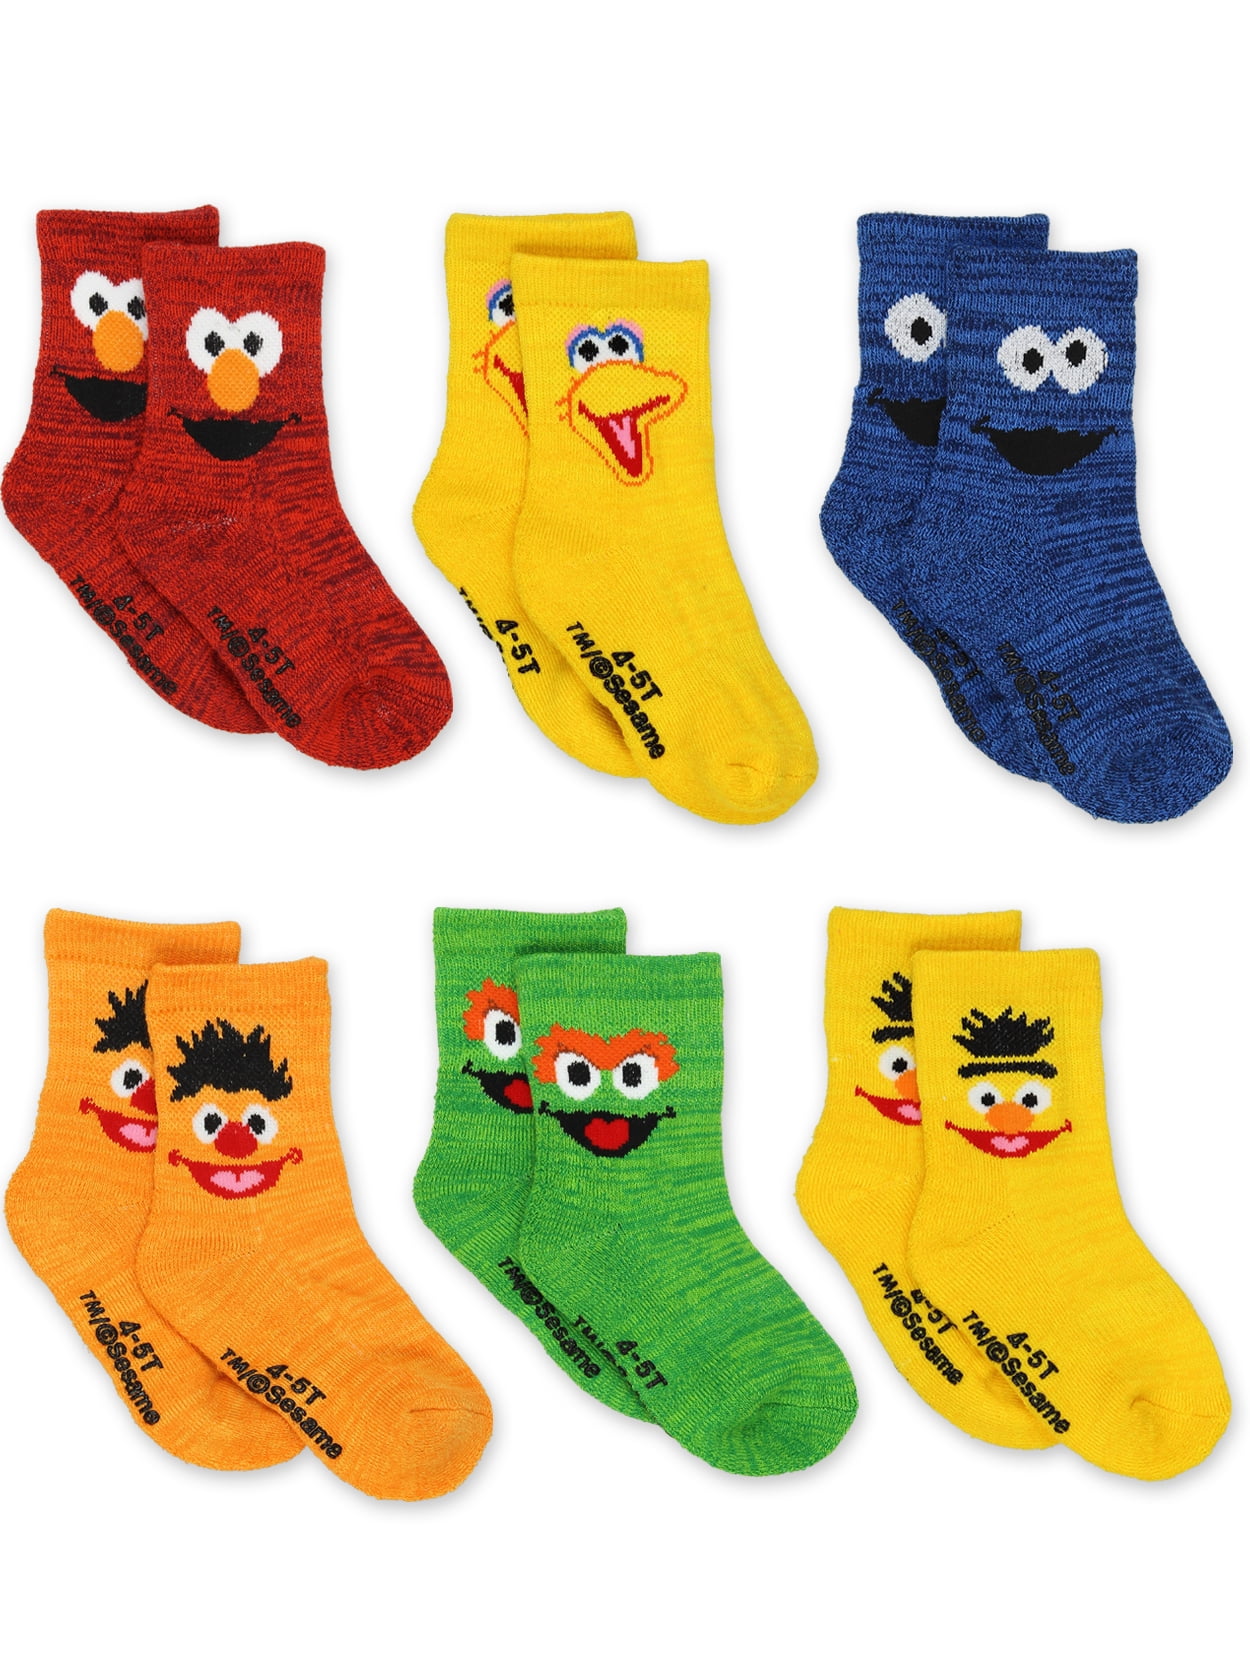 Crayon smile socks set for kids Smile socks 4 pair set kids smile socks socks Cute socks set kids Kids socks happy face socks kids